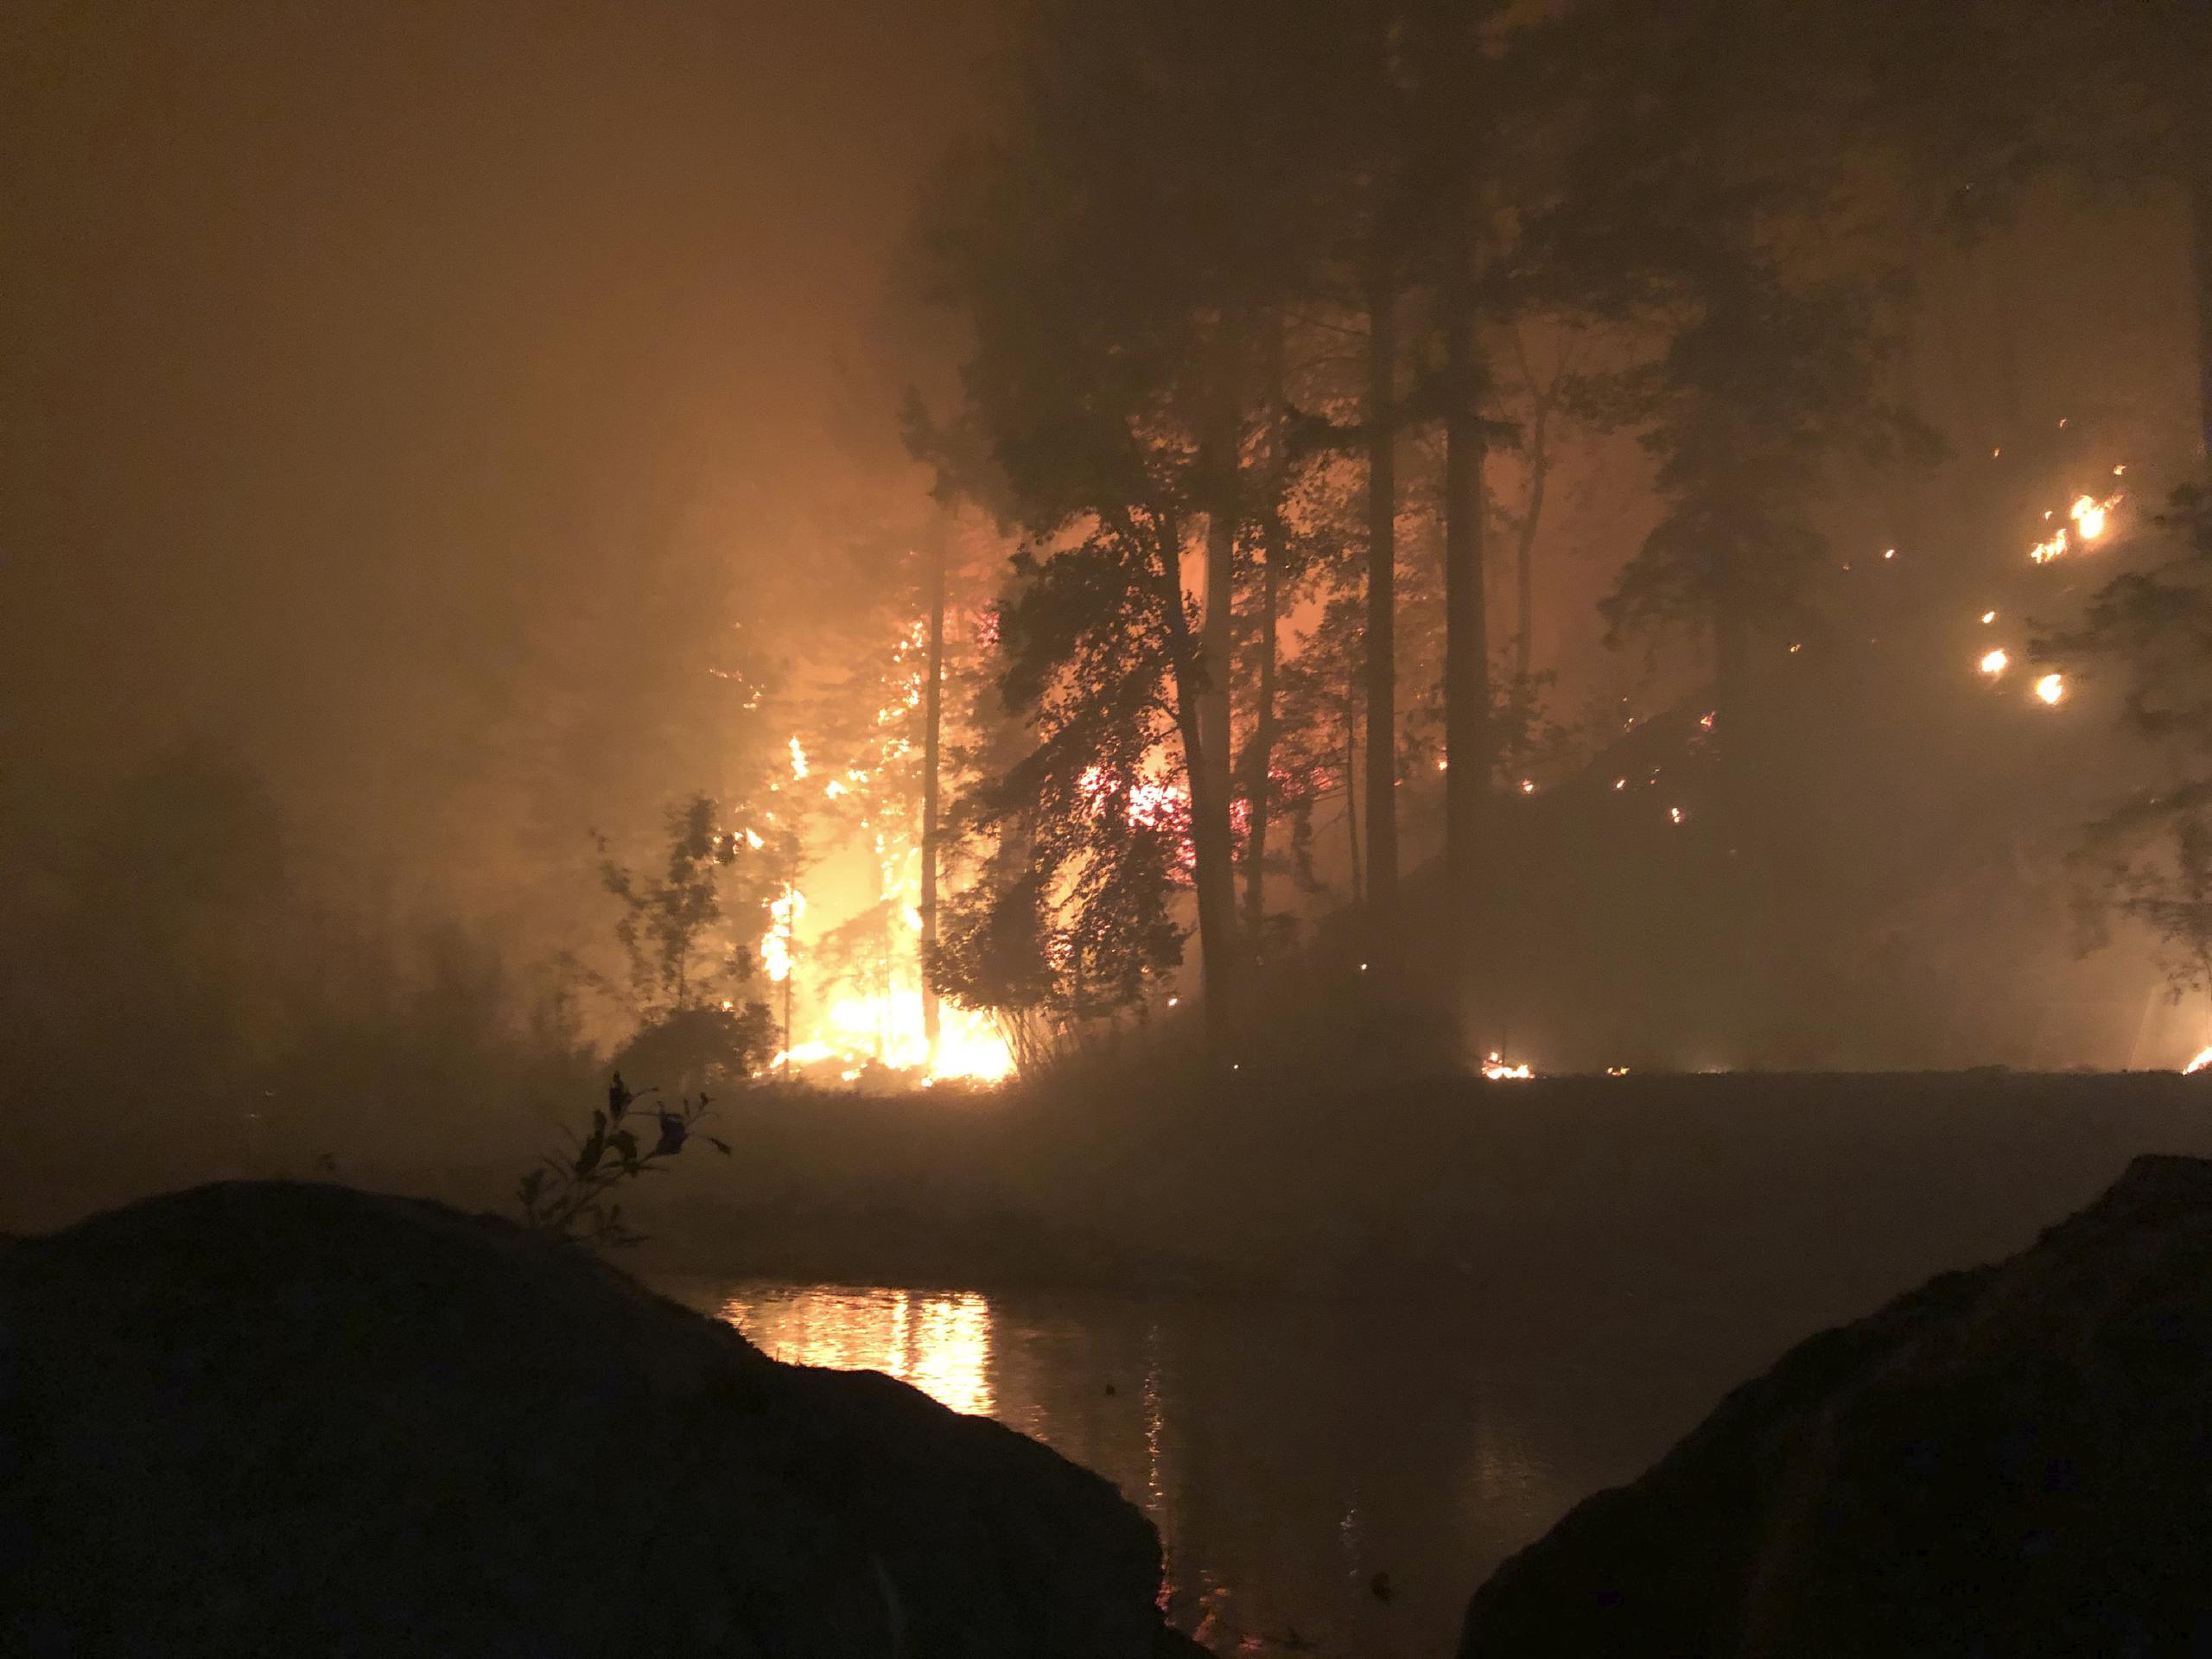 Esta fotografía fue tomada por Don Myron que se refugió de un incendio forestal mortífero sobre una roca mientras se protegía con una silla de plástico a la mitad del río Little North Santiam tras huir de su casa en Lyons, Oregon.